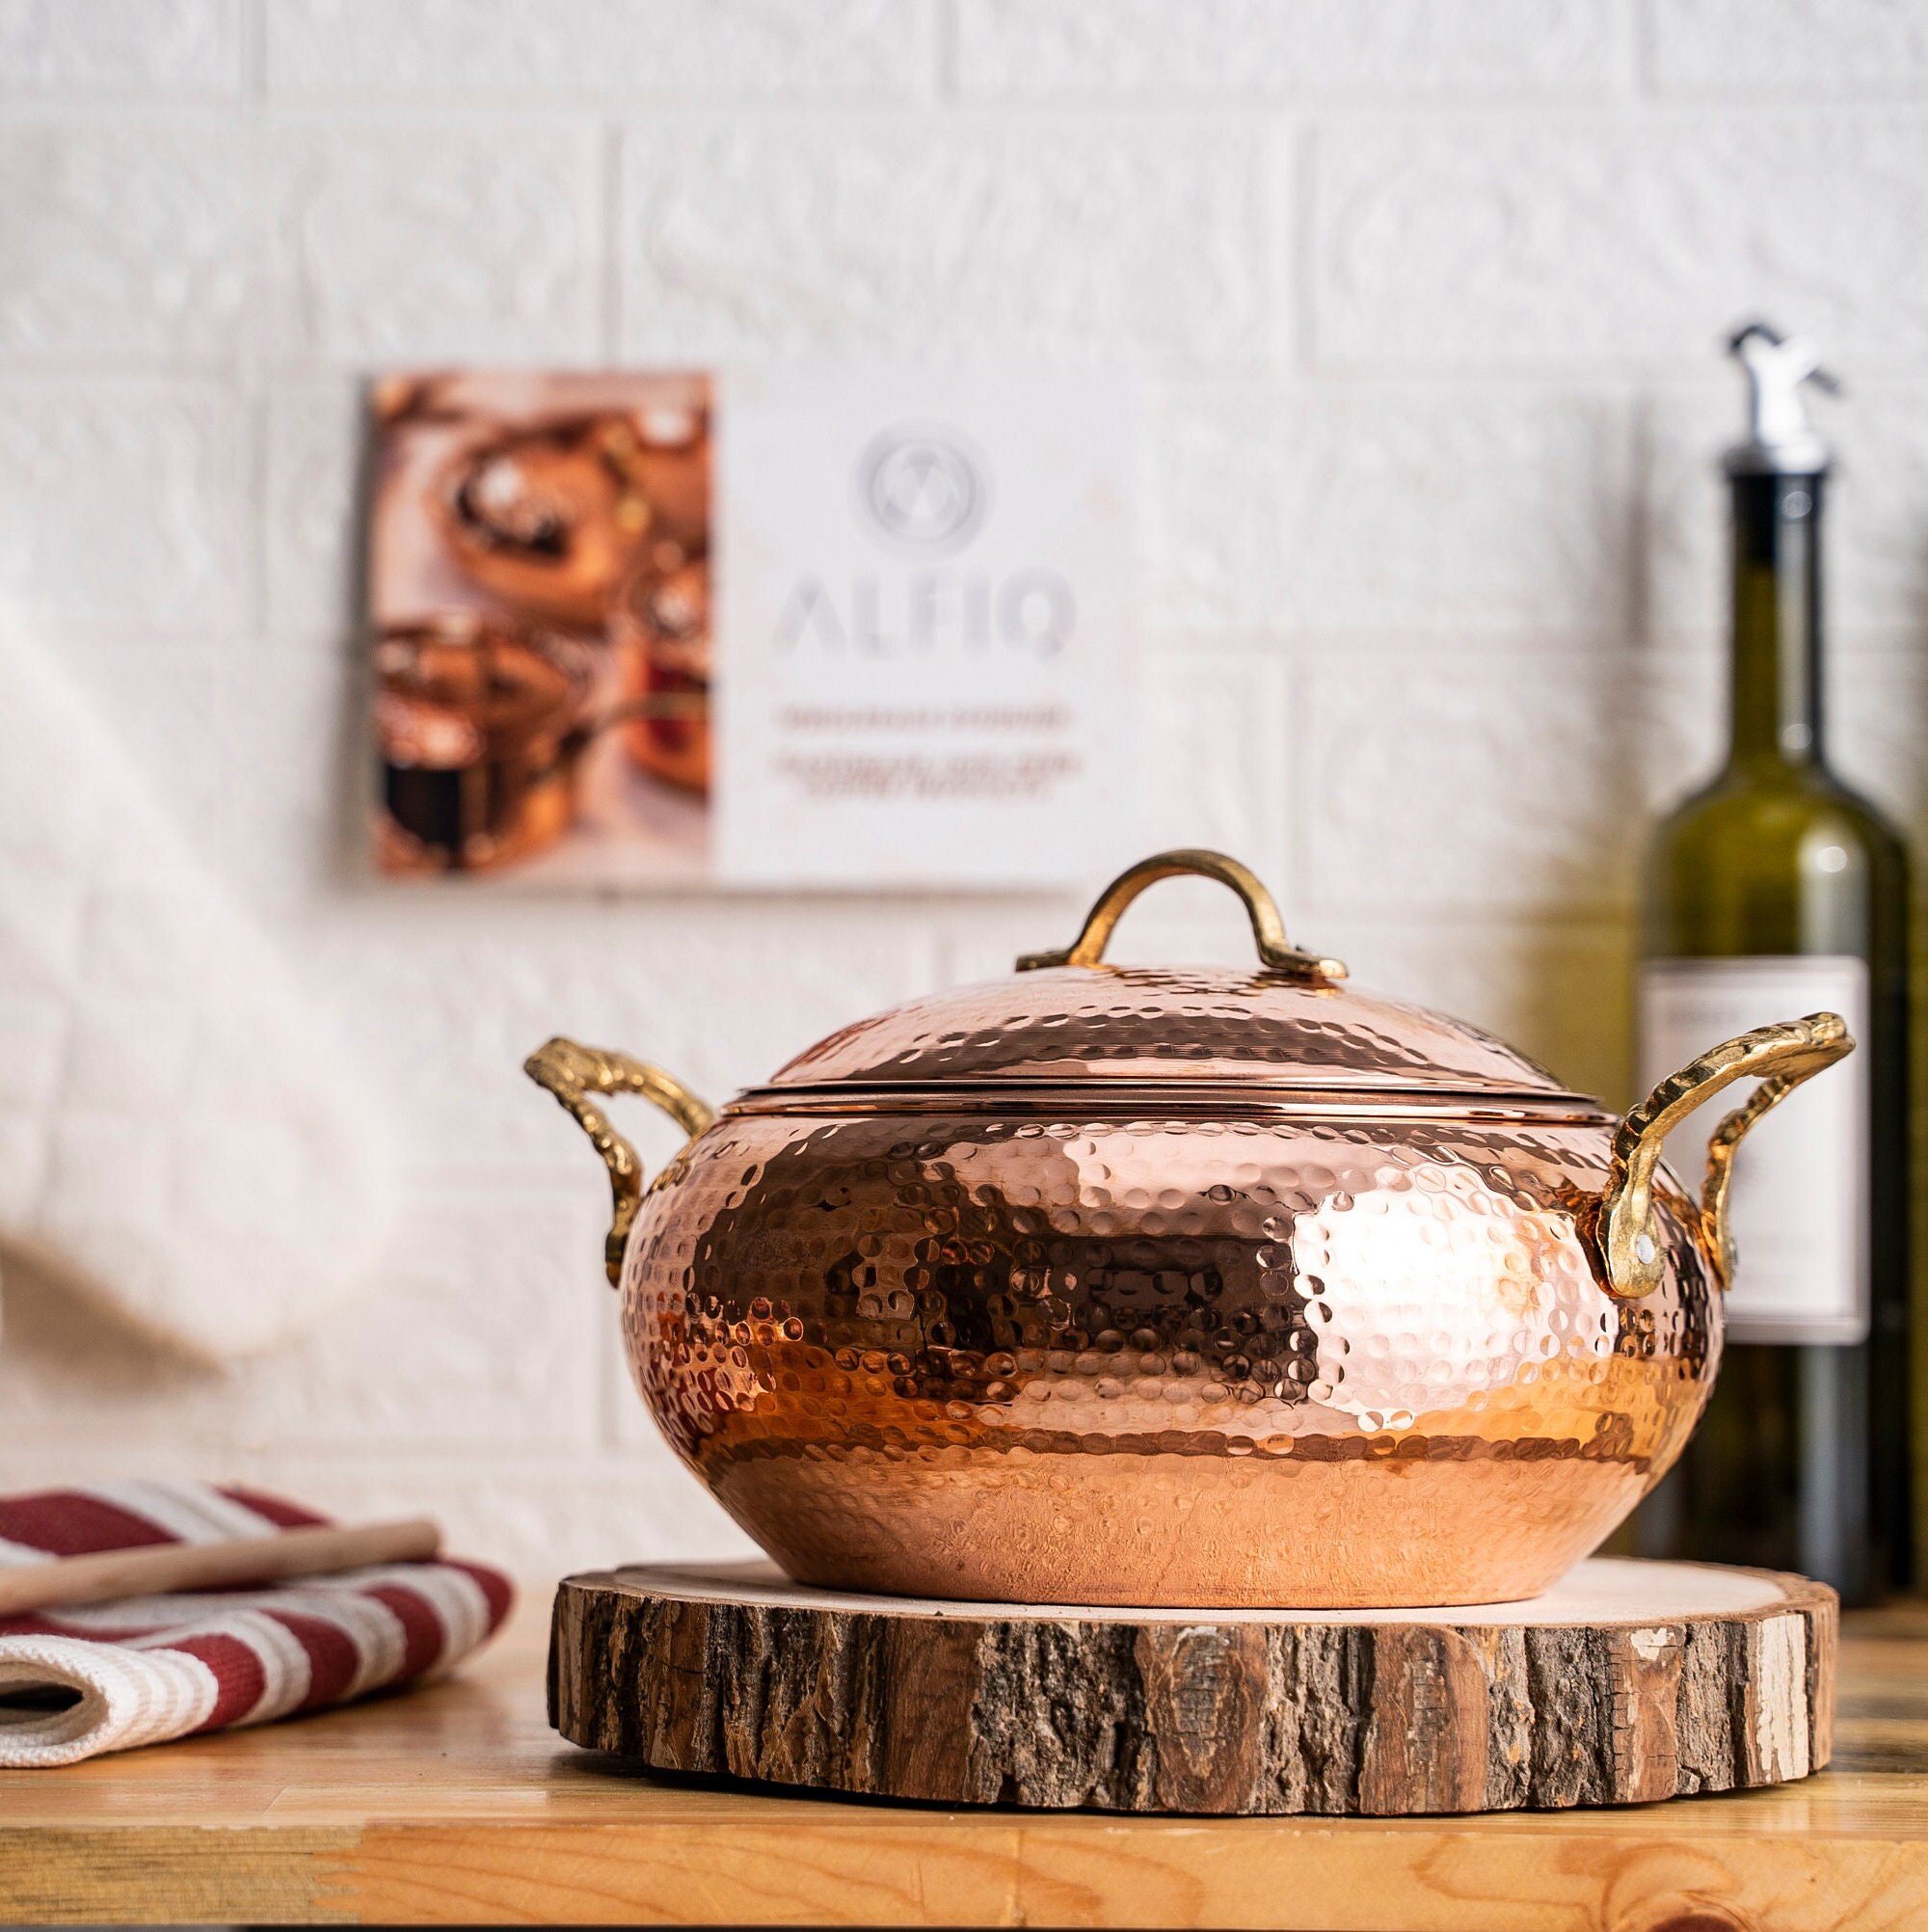 *Marushin Copperware Round Steak Cover Pure Copper 27cm Brass Handle